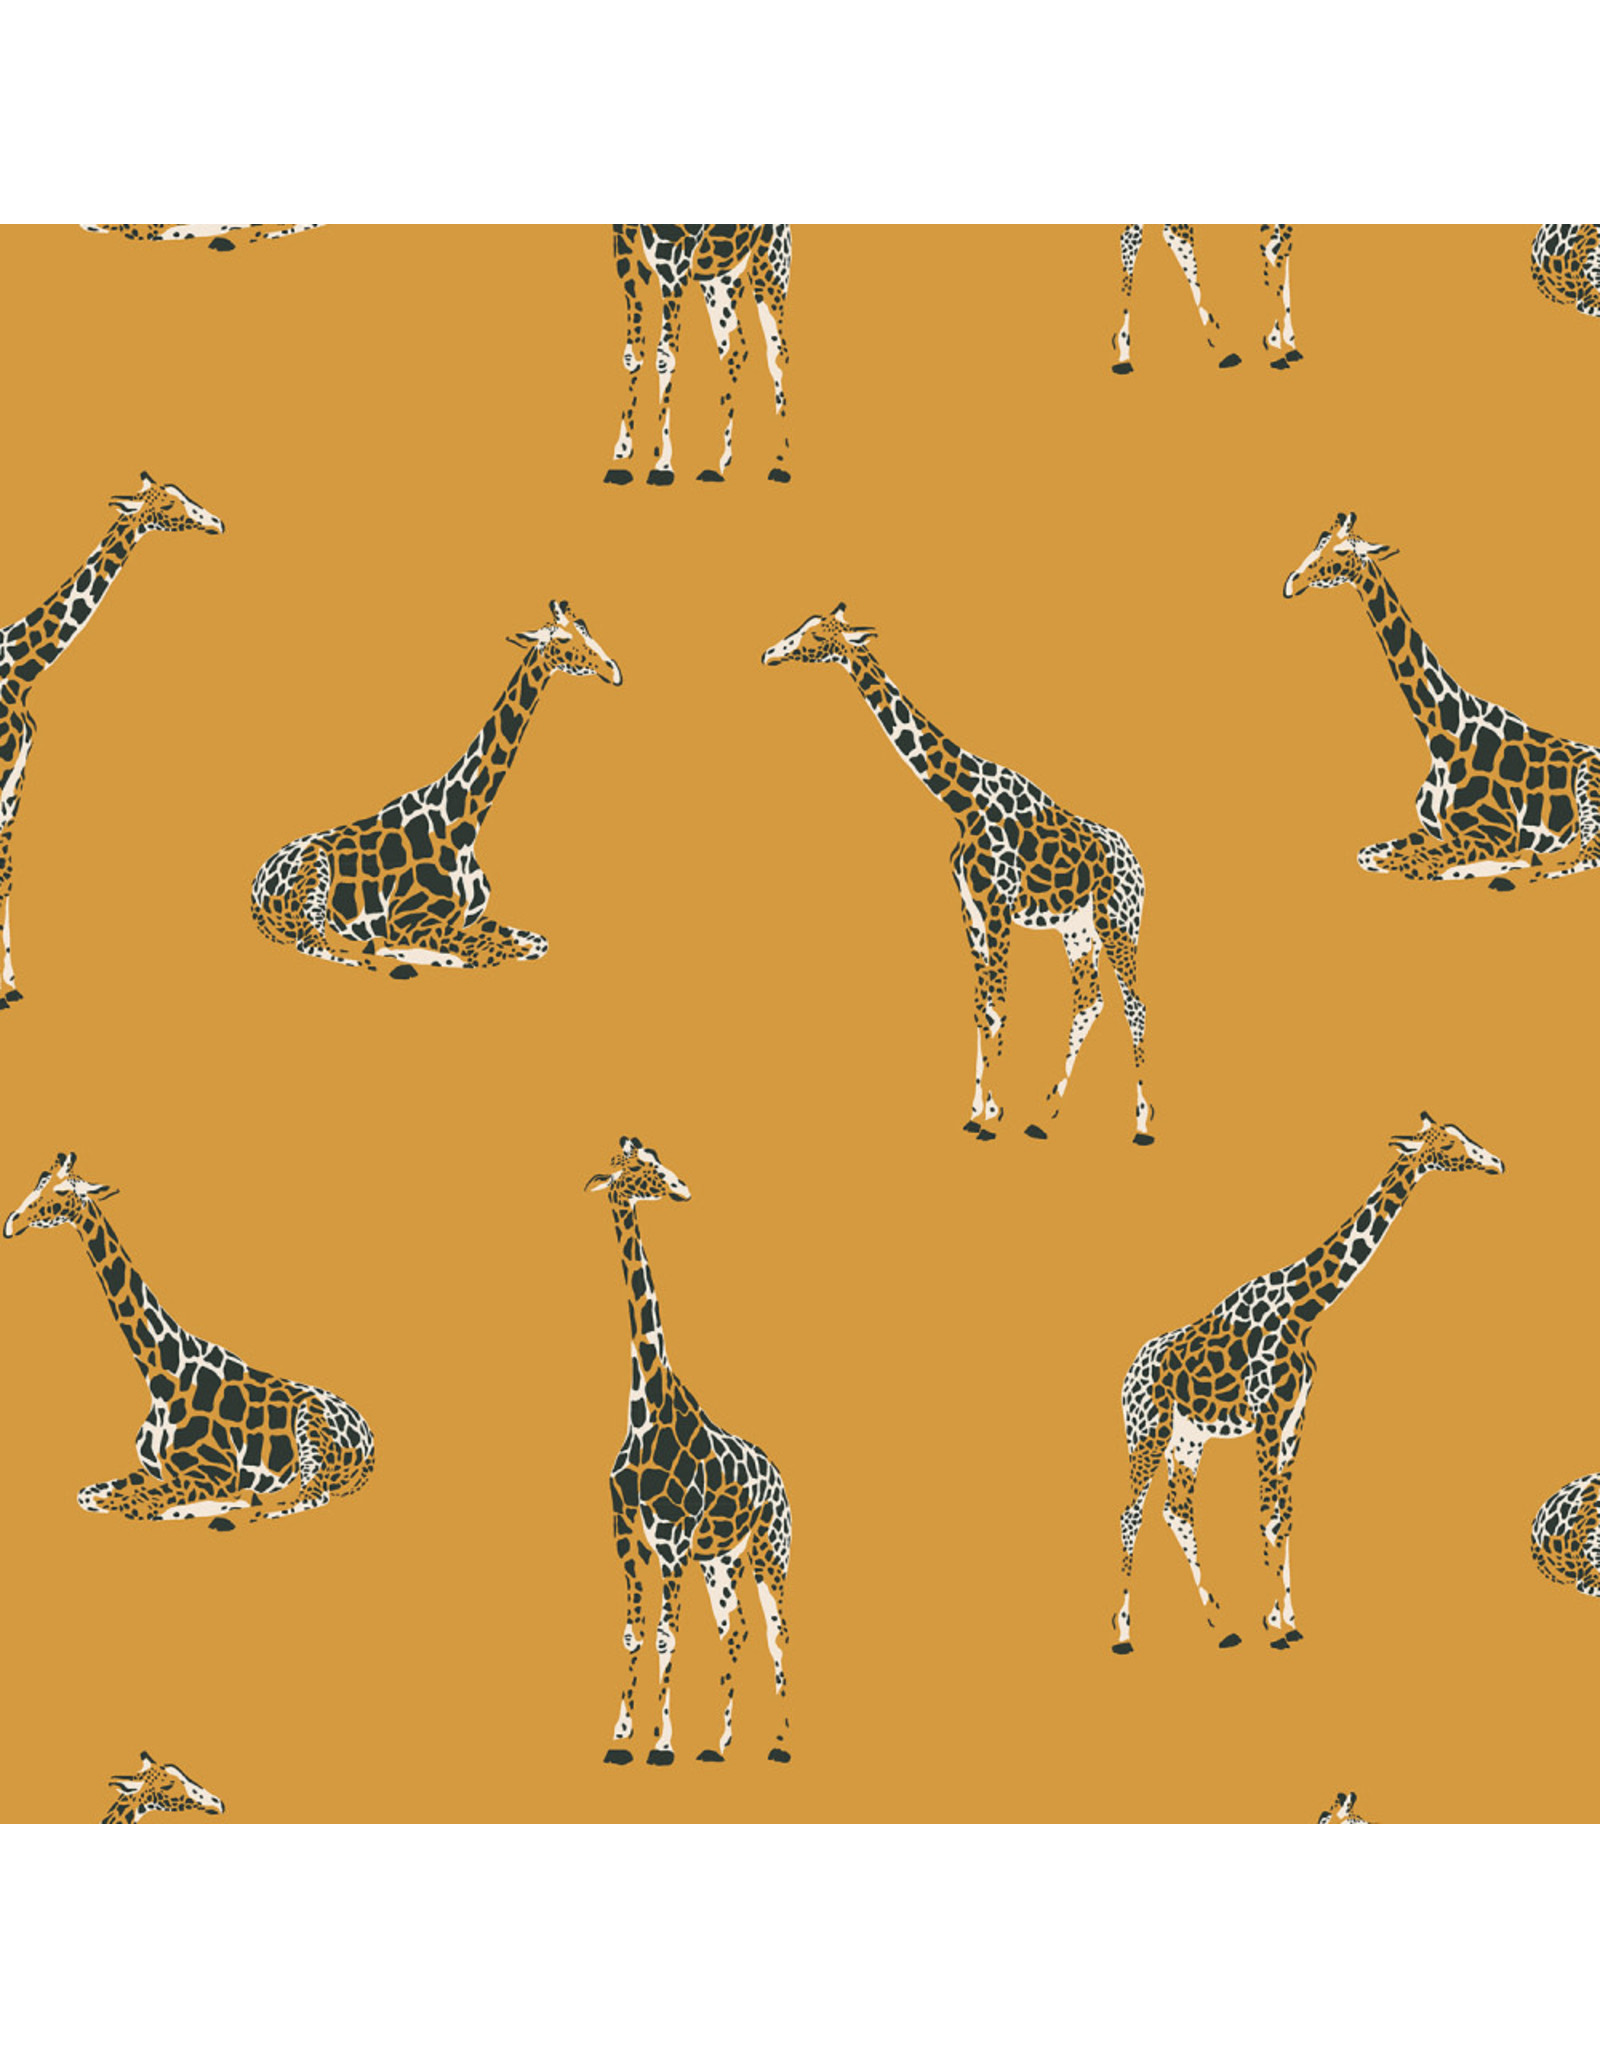 RJR Fabrics Magic of Serengeti, Giraffe in Golden Vista, Fabric Half-Yards